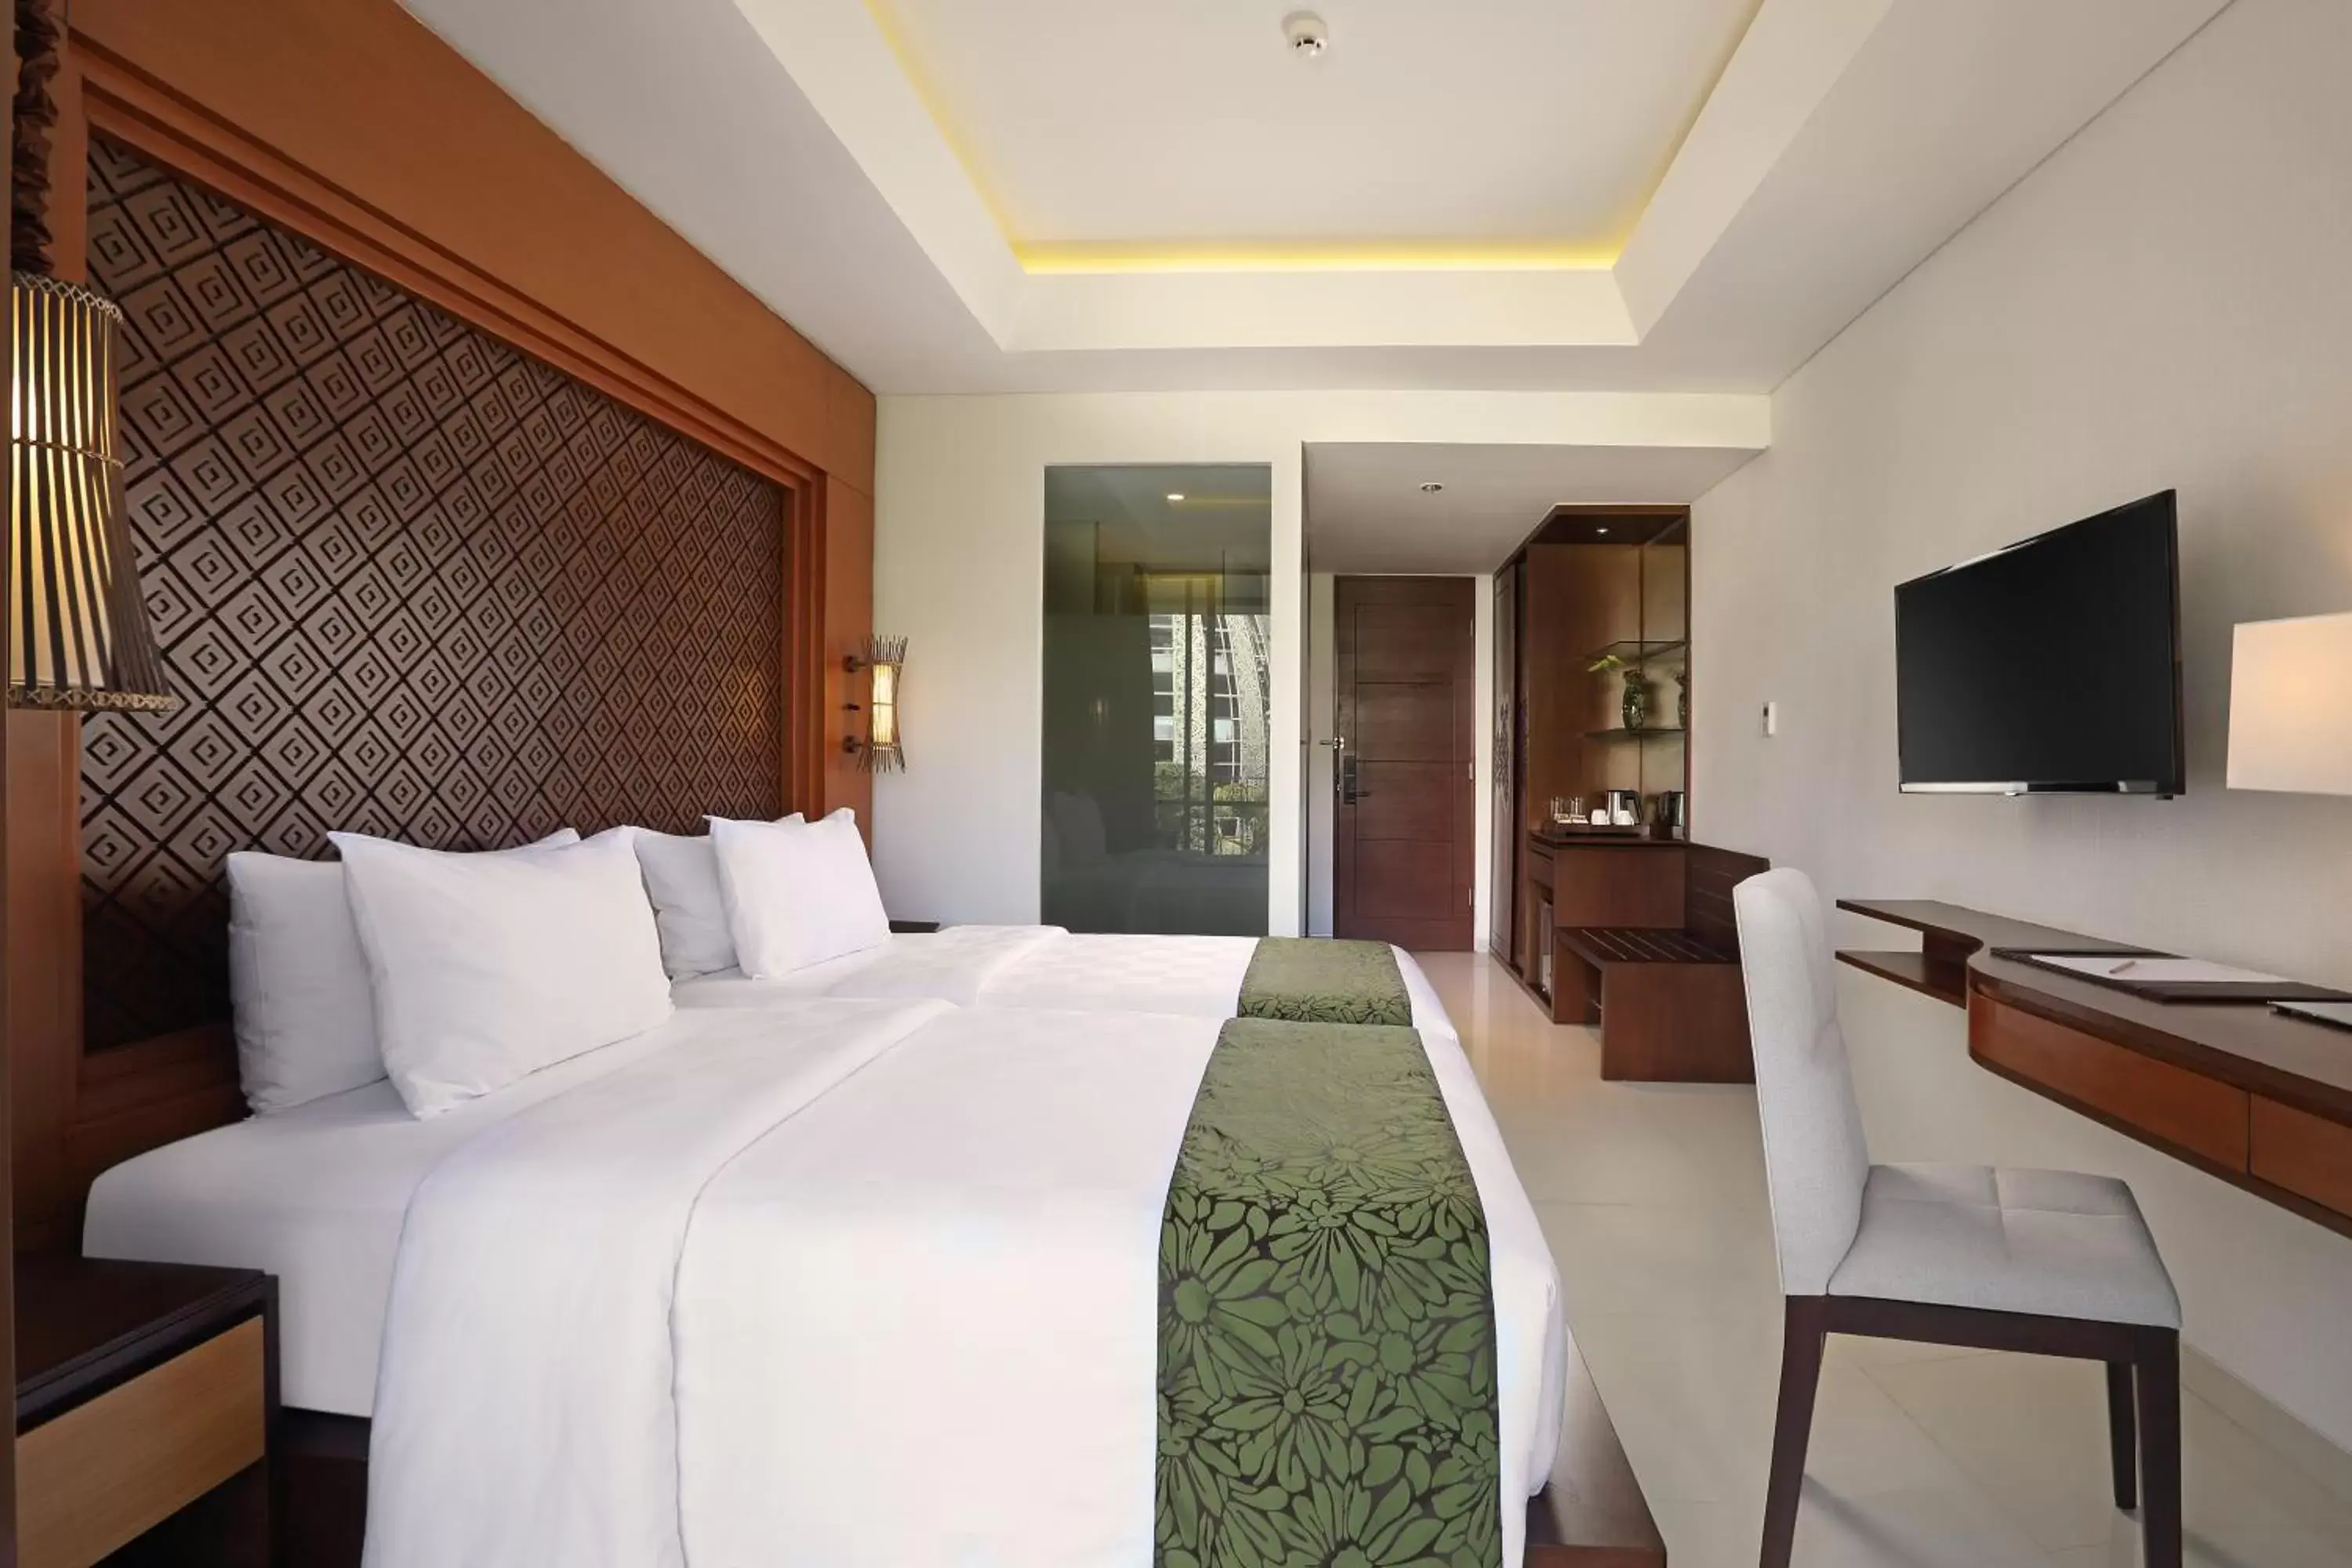 Bed, Room Photo in Golden Tulip Jineng Resort Bali